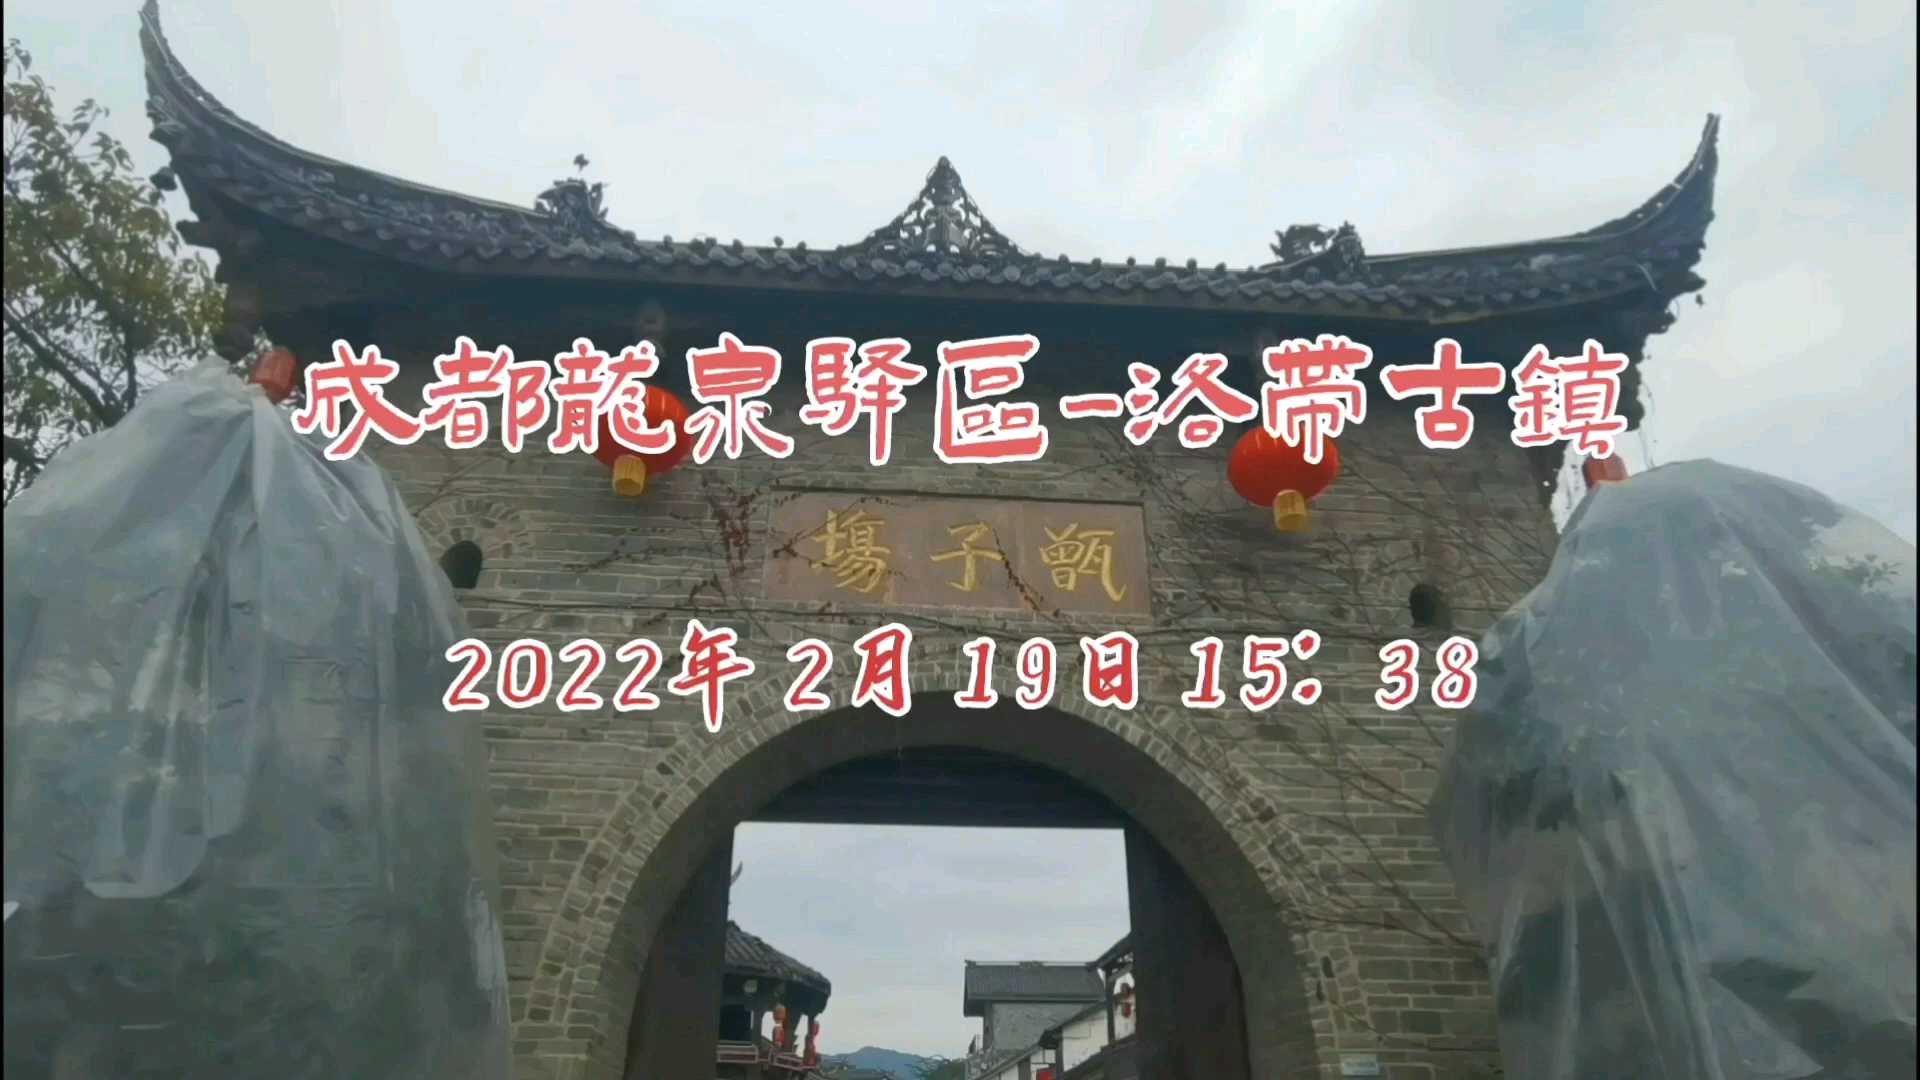 2022年2月19日成都龙泉驿区洛带古镇